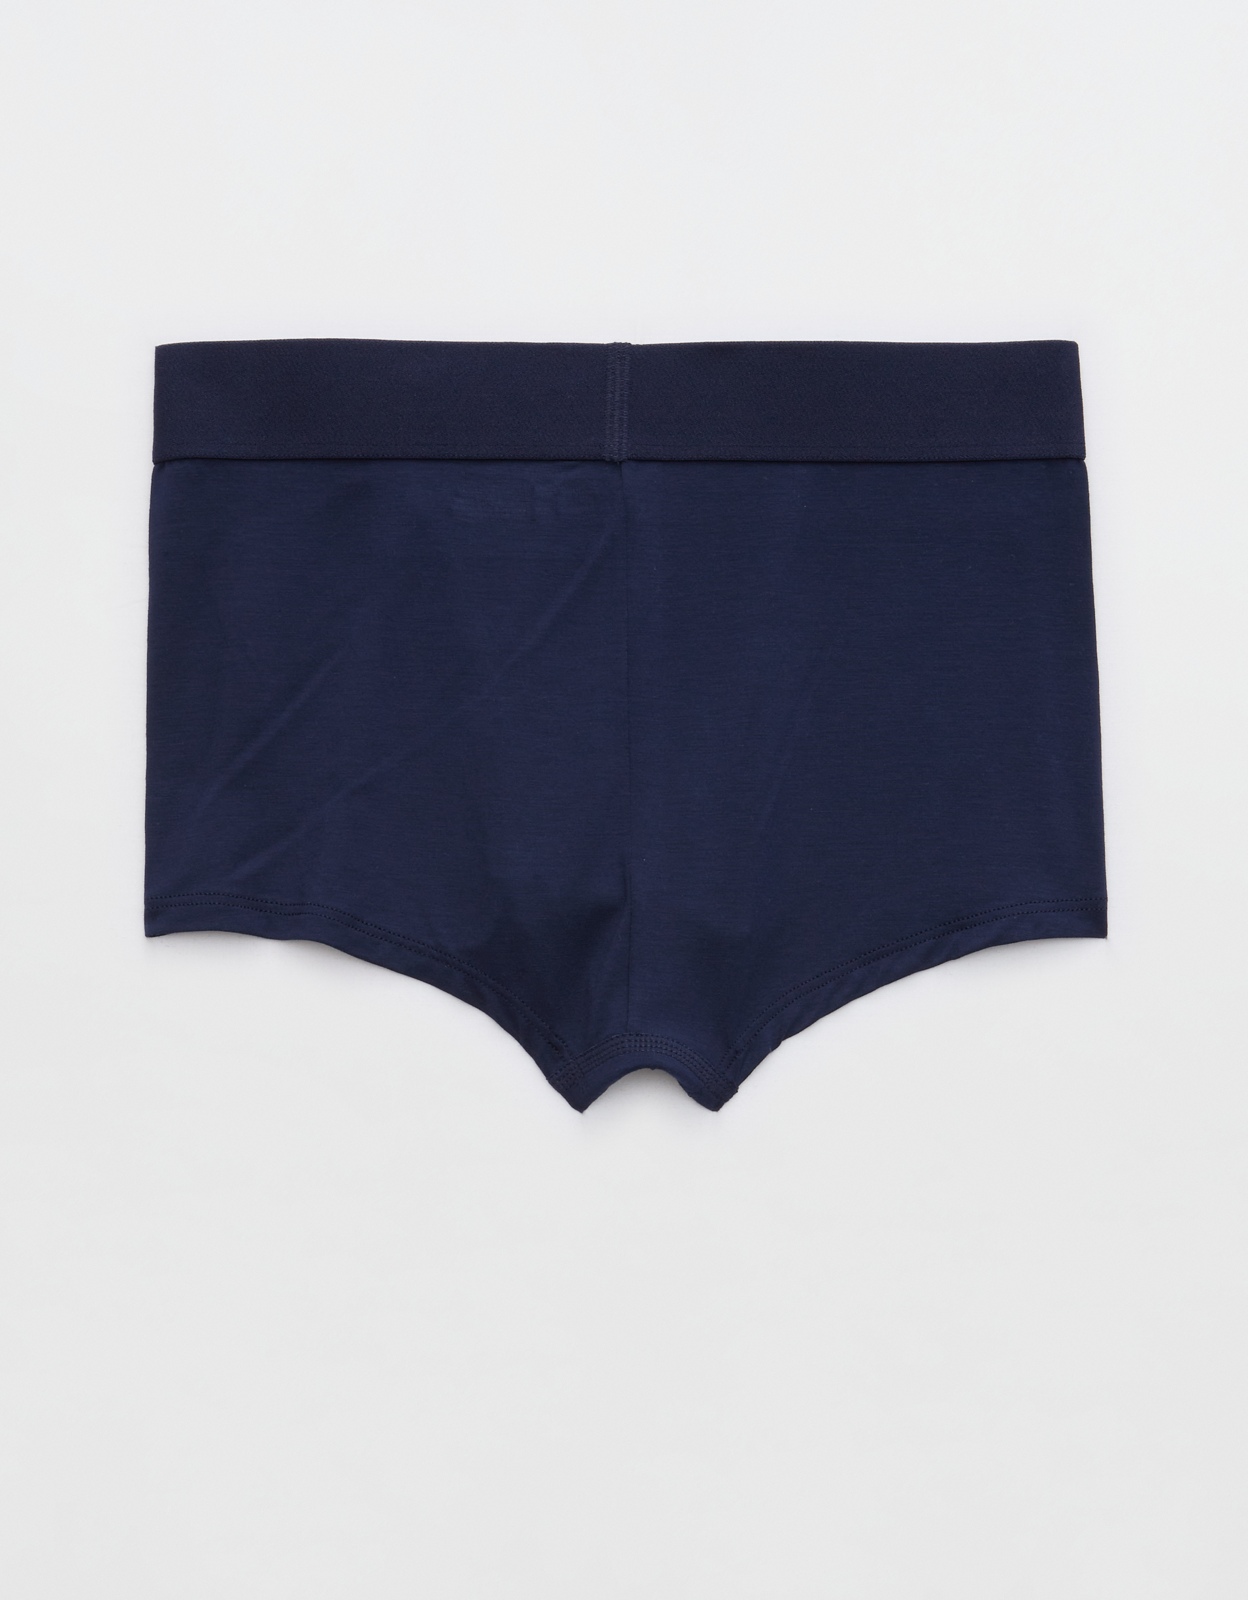 Buy Superchill Modal Boyshort Underwear online